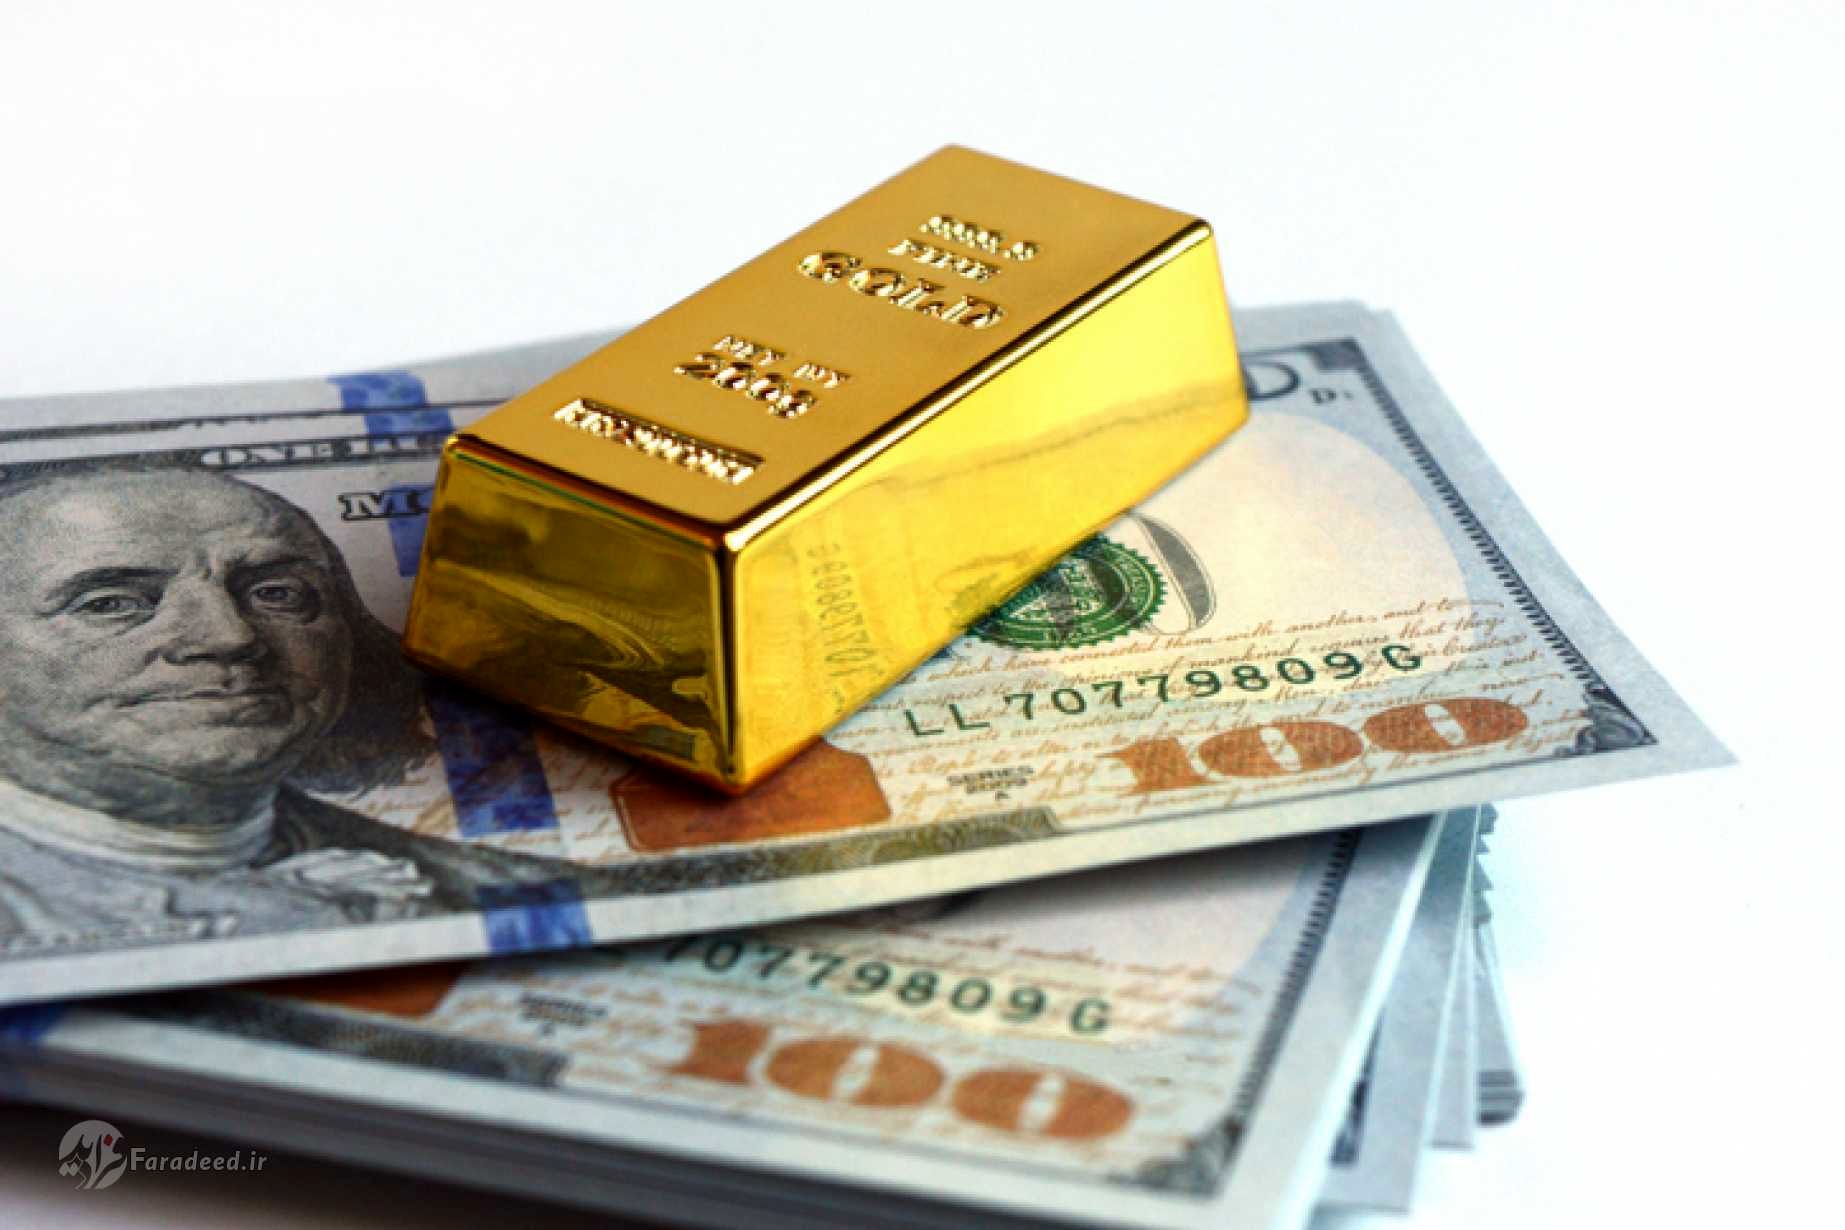 نرخ ارز، دلار، قیمت سکه، طلا و یورو در بازار امروز سه شنبه ۱۷ تیر ۹۹